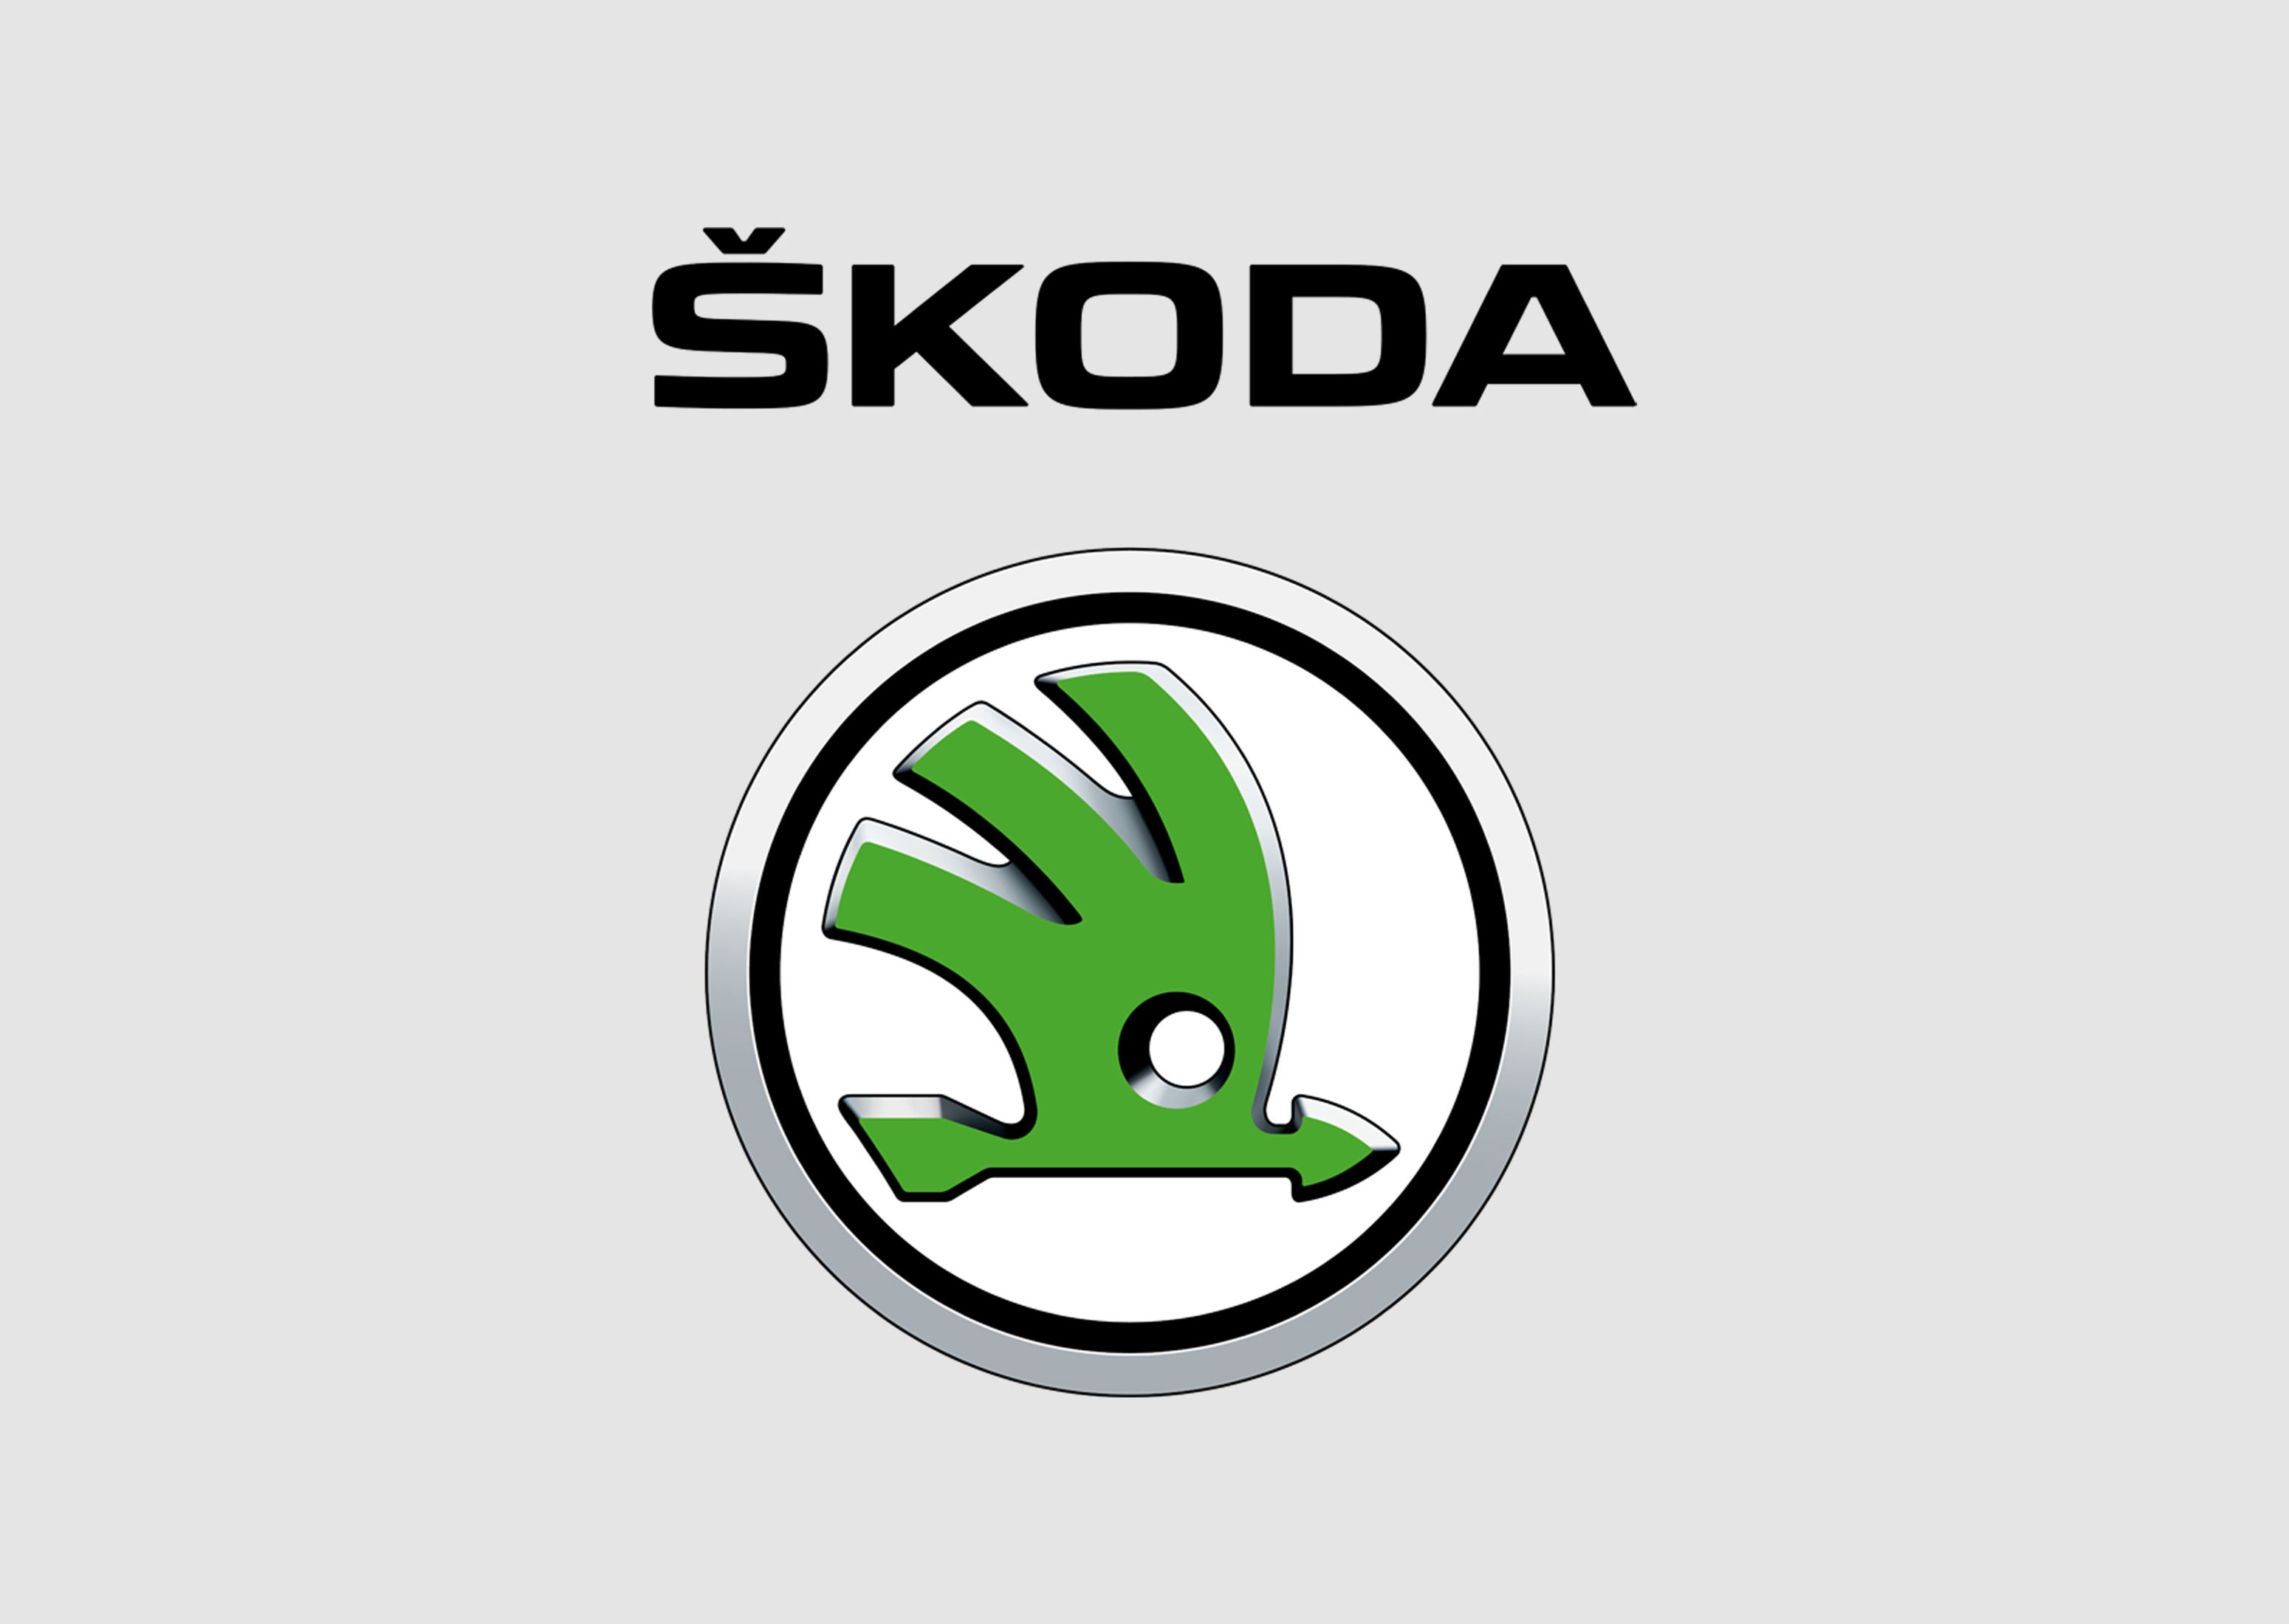 new-skoda-logo-design-2011-bpo-czech-design-1653722917.jpg